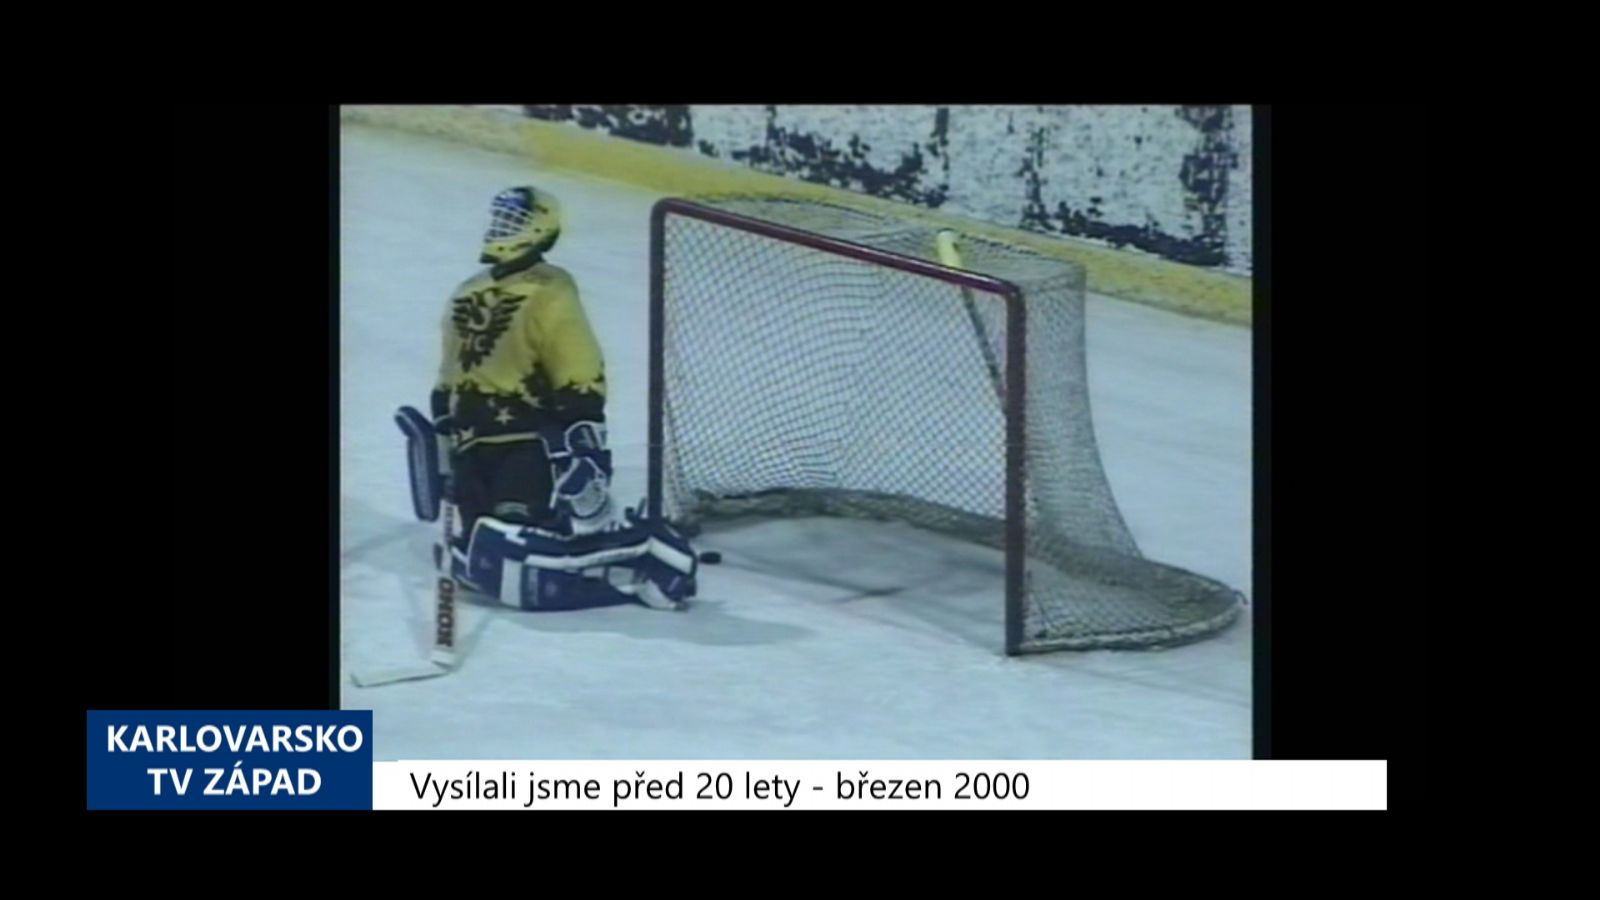 2000 – Sokolov, Klášterec: Dva zápasy druhé hokejové ligy (TV Západ)